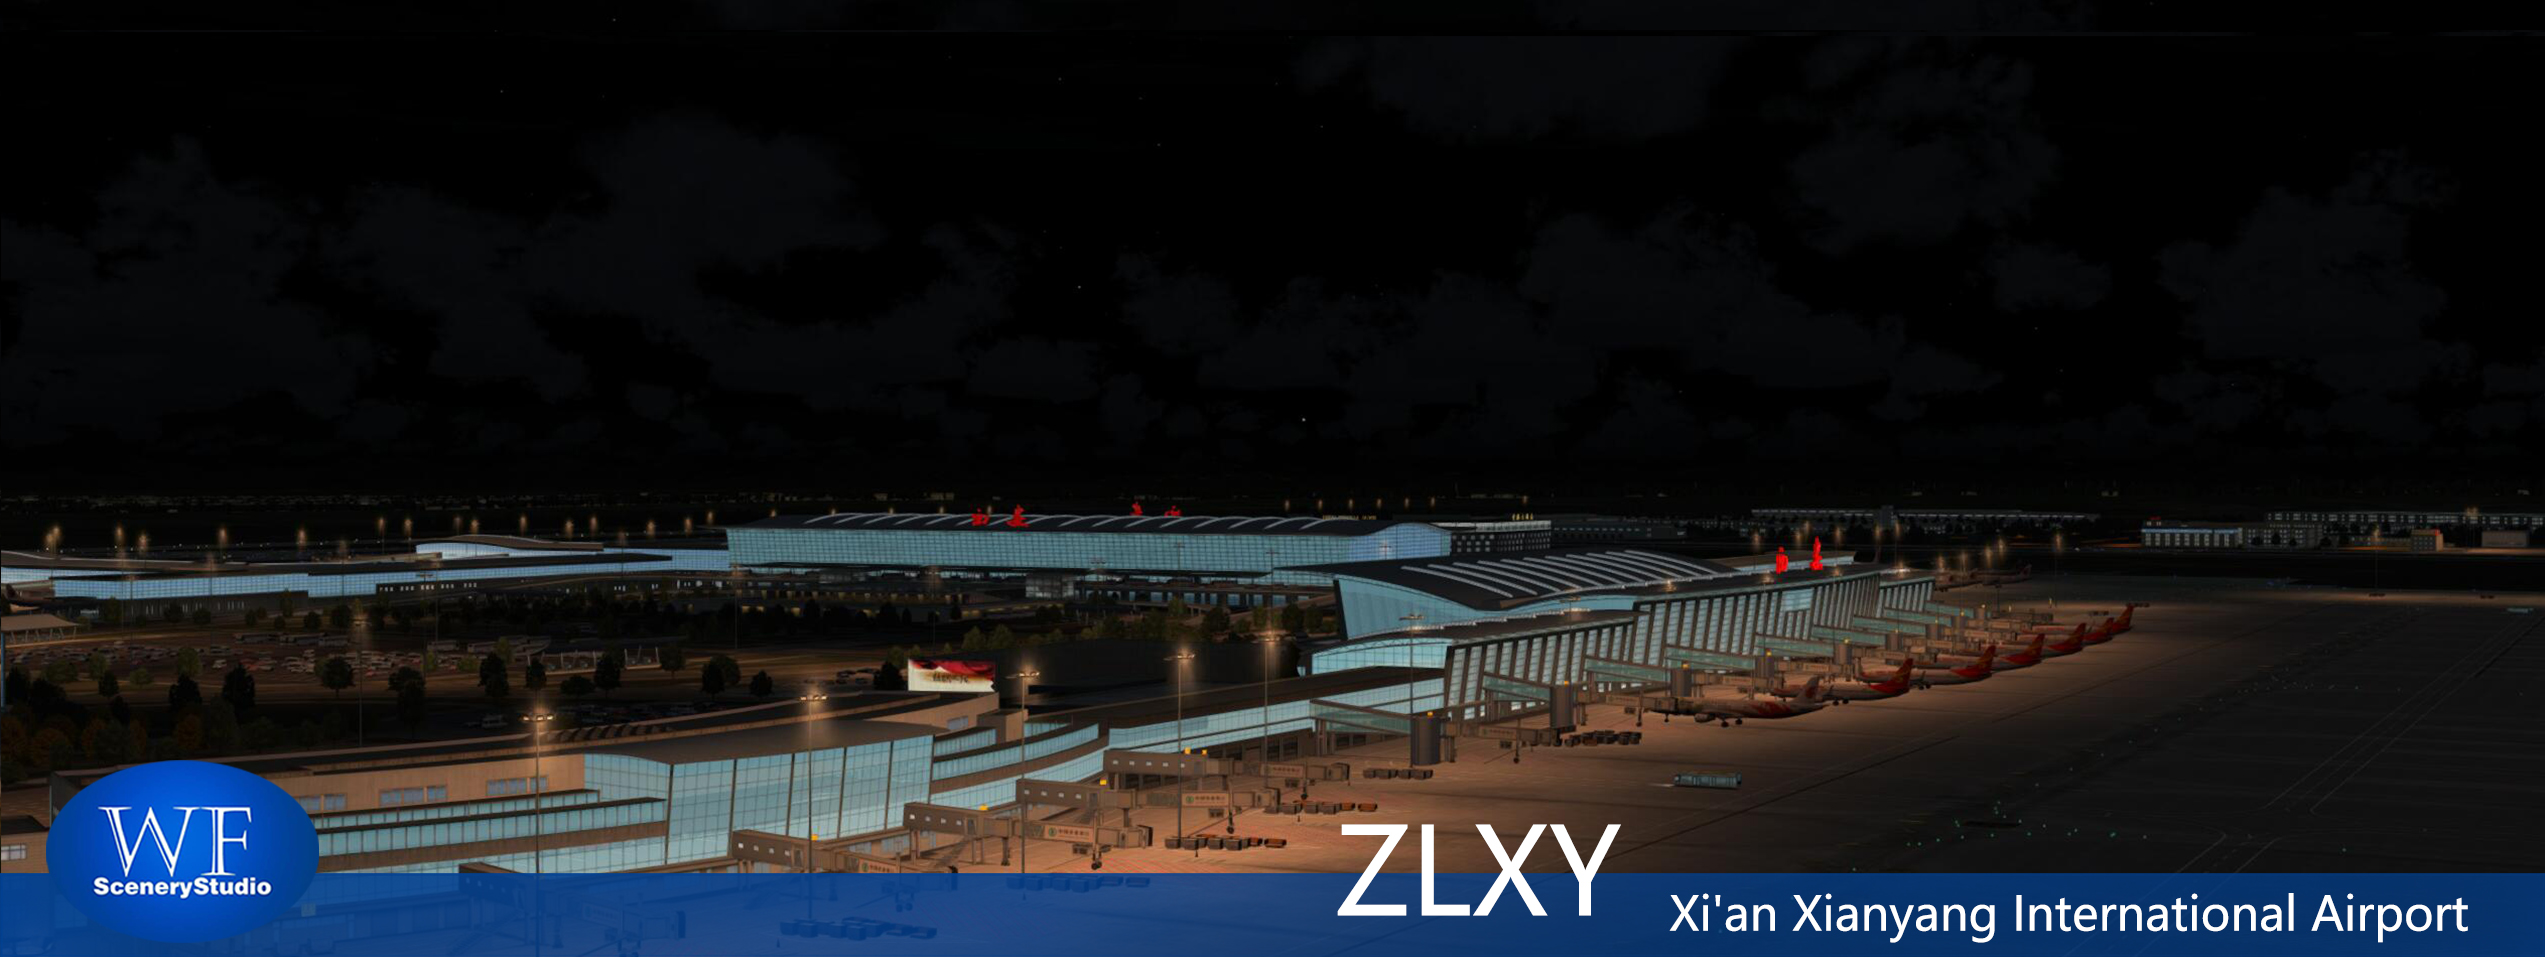 西安咸阳国际机场发布-7517 